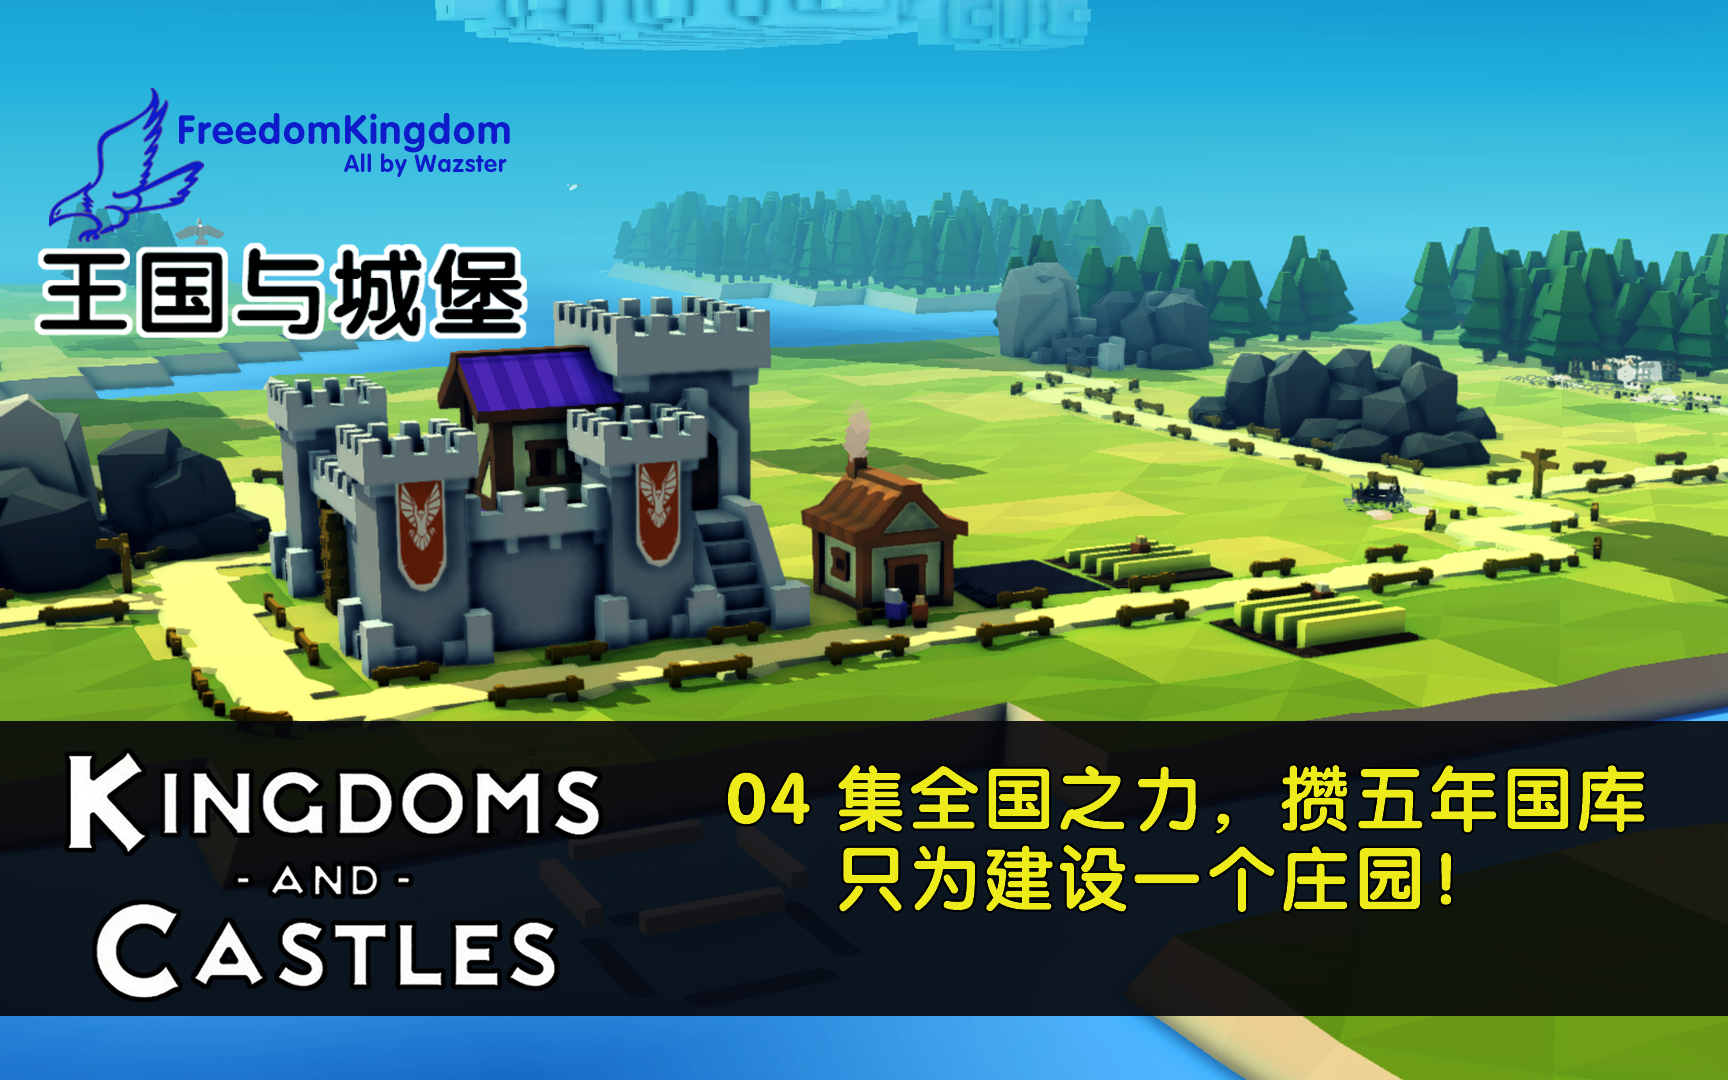 王国与城堡 kingdoms_and_castles #04集全国之力,赞五年国库,只为